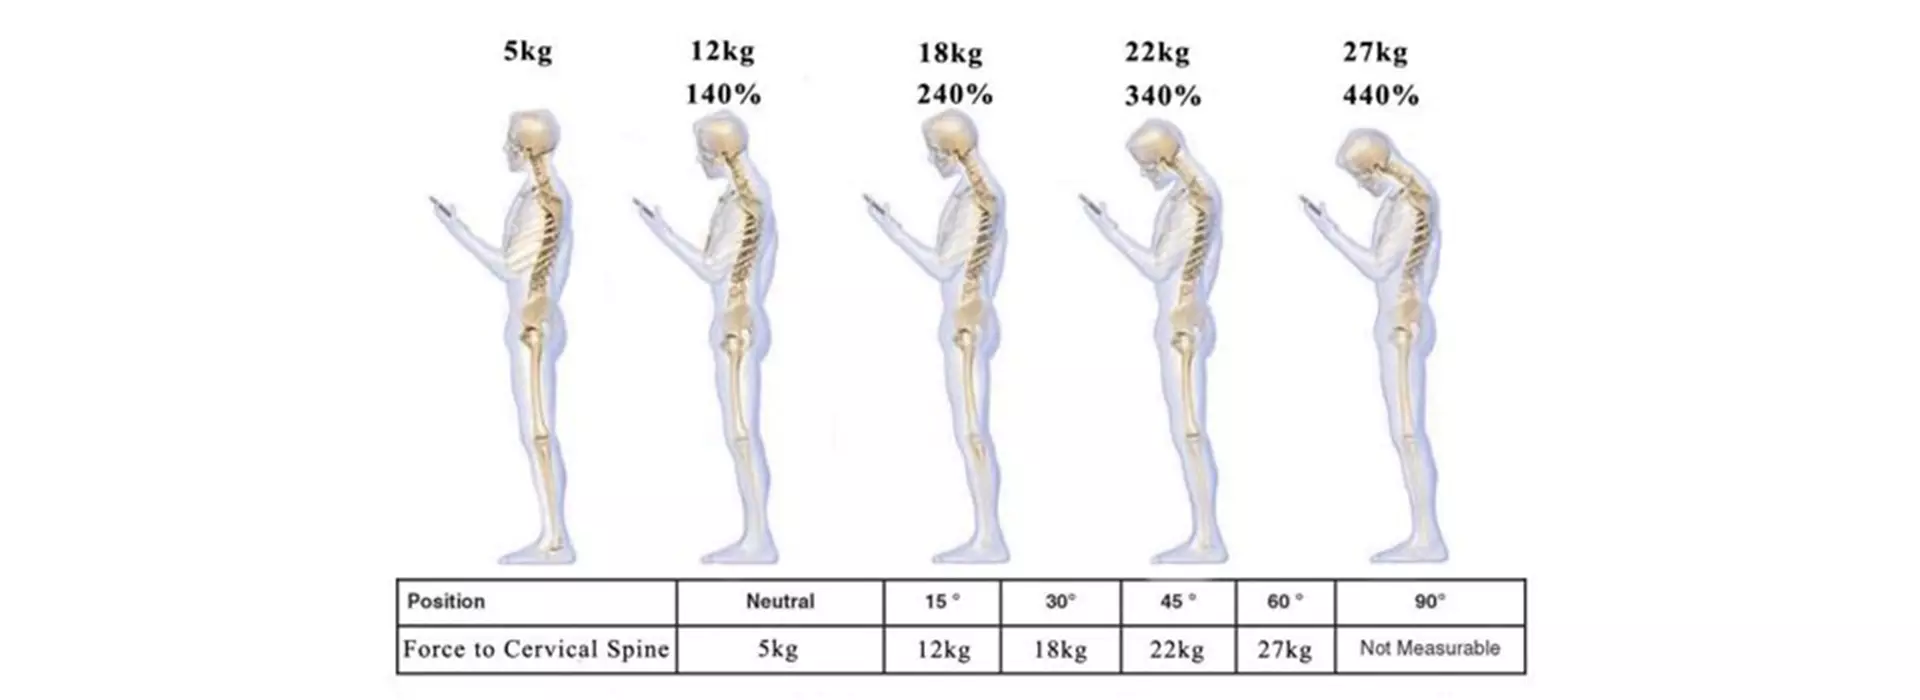 disegno di 5 scheletri con le varie posture, percentuali di carico, kilogrammi e gradi di inclinazione del capo per spiegare leva muscolare svantaggiosa per contrastare la gravità cervicale ciclismo